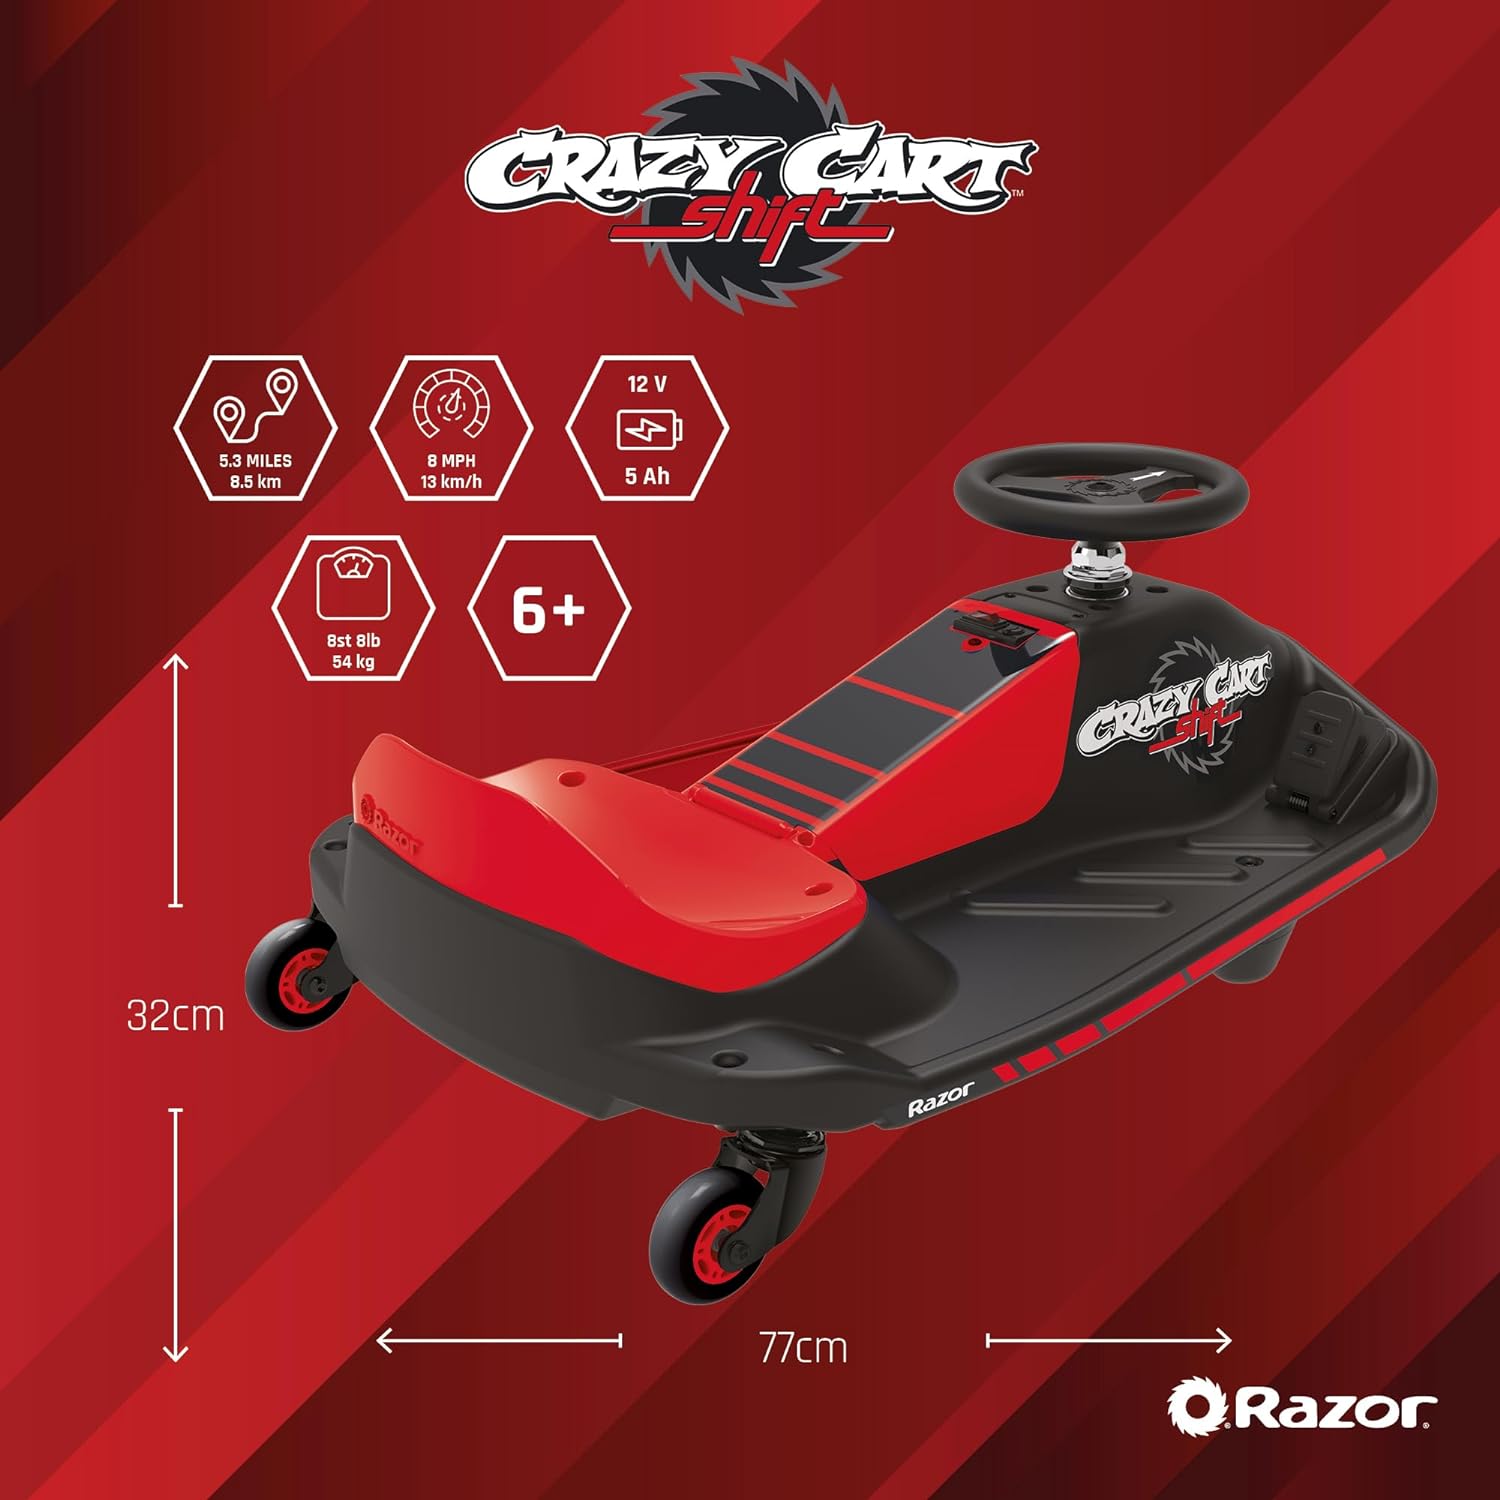 Razor Crazy Cart Shift review